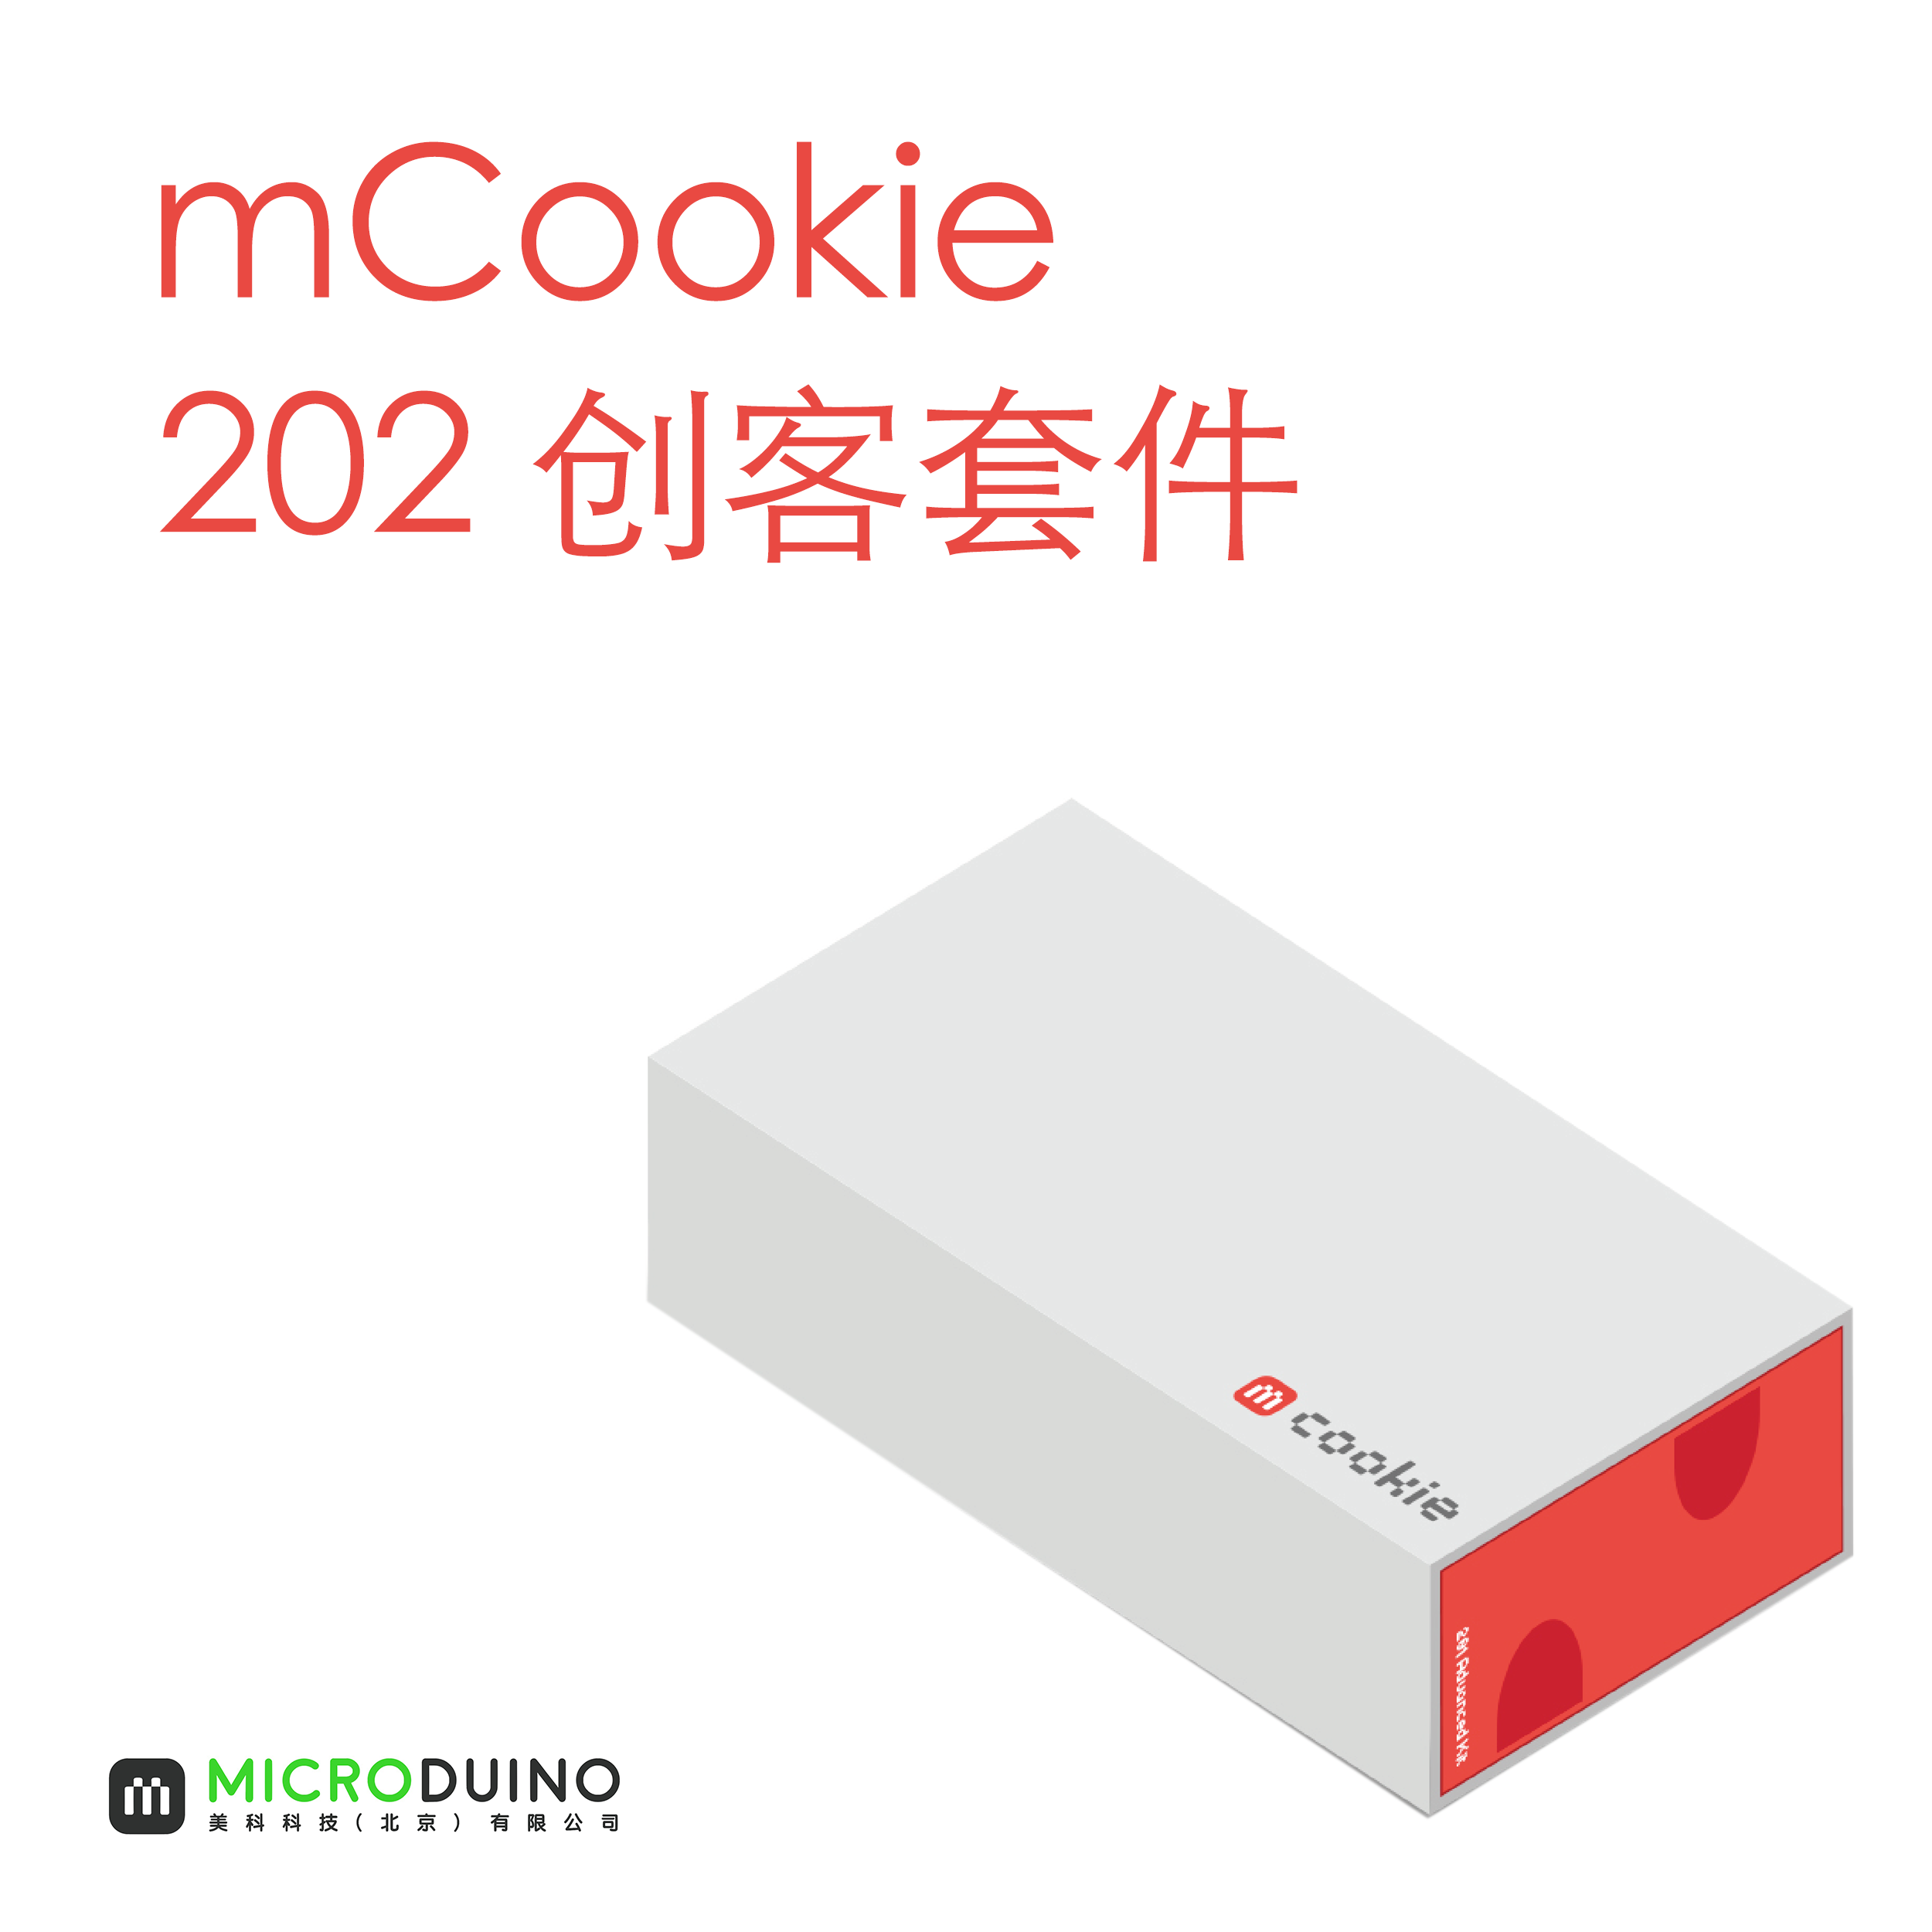 mCookie 202创客套件